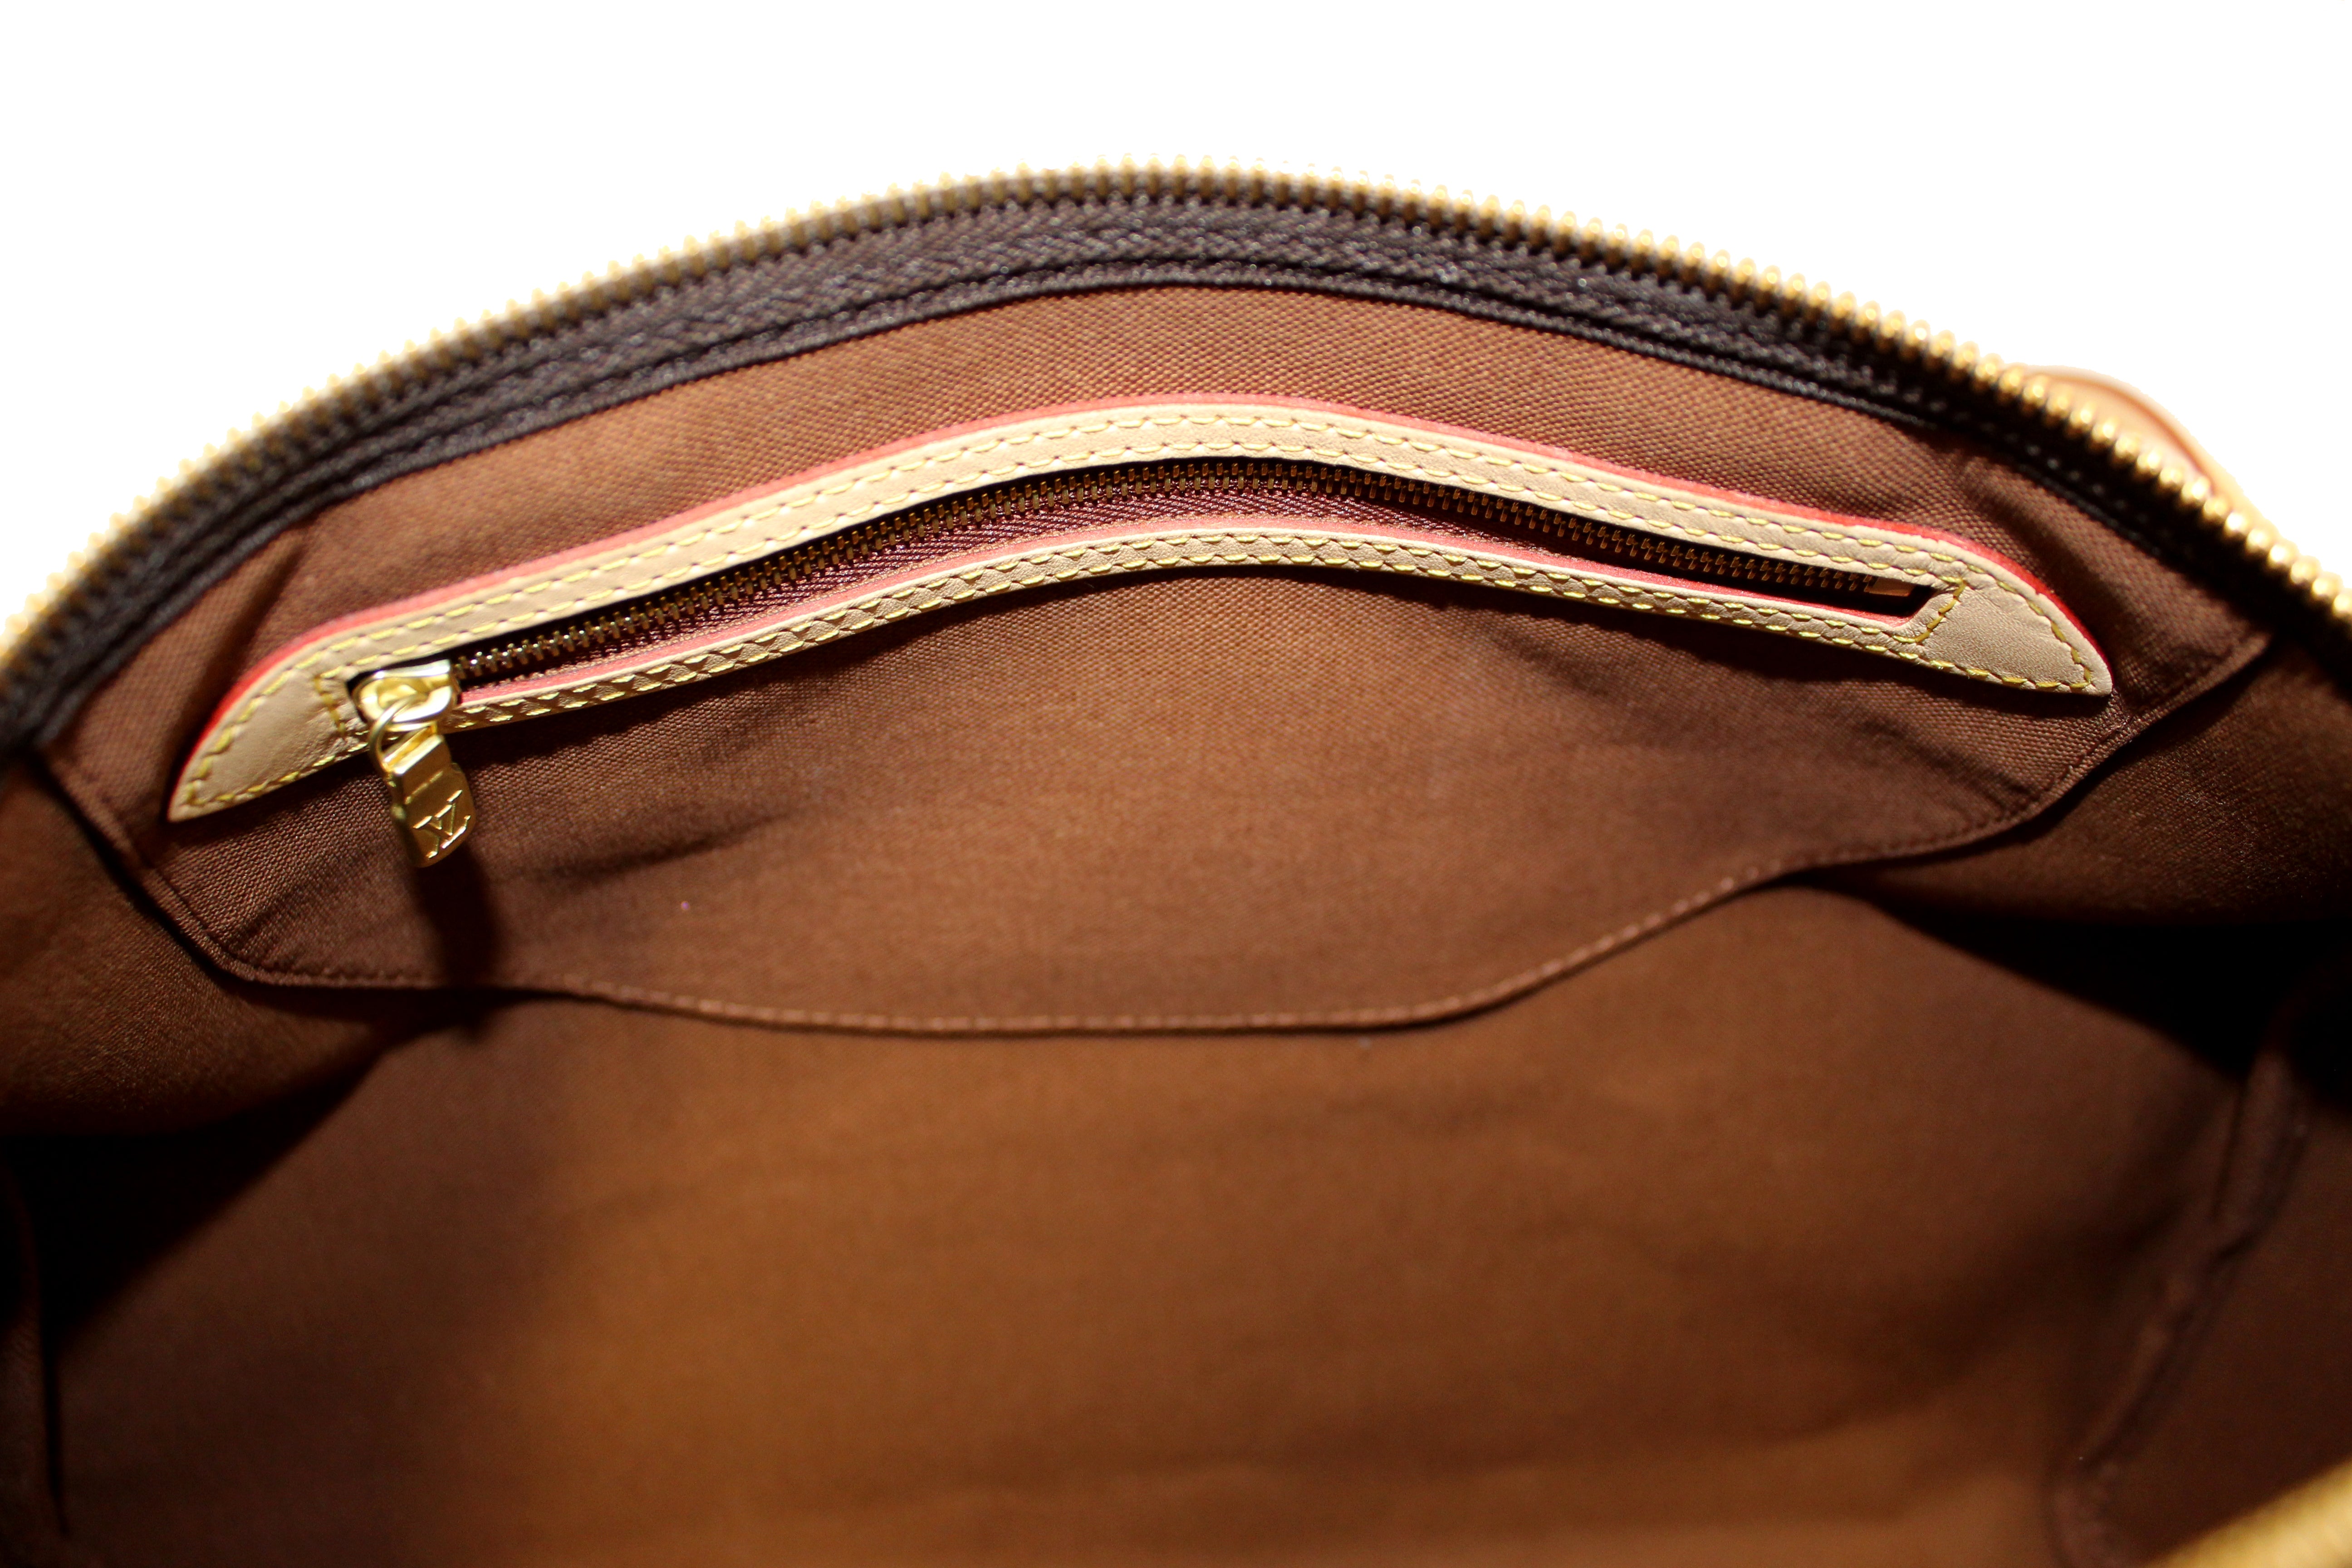 Authentic Louis Vuitton Classic Monogram Speedy 35 Bandouliere Bag